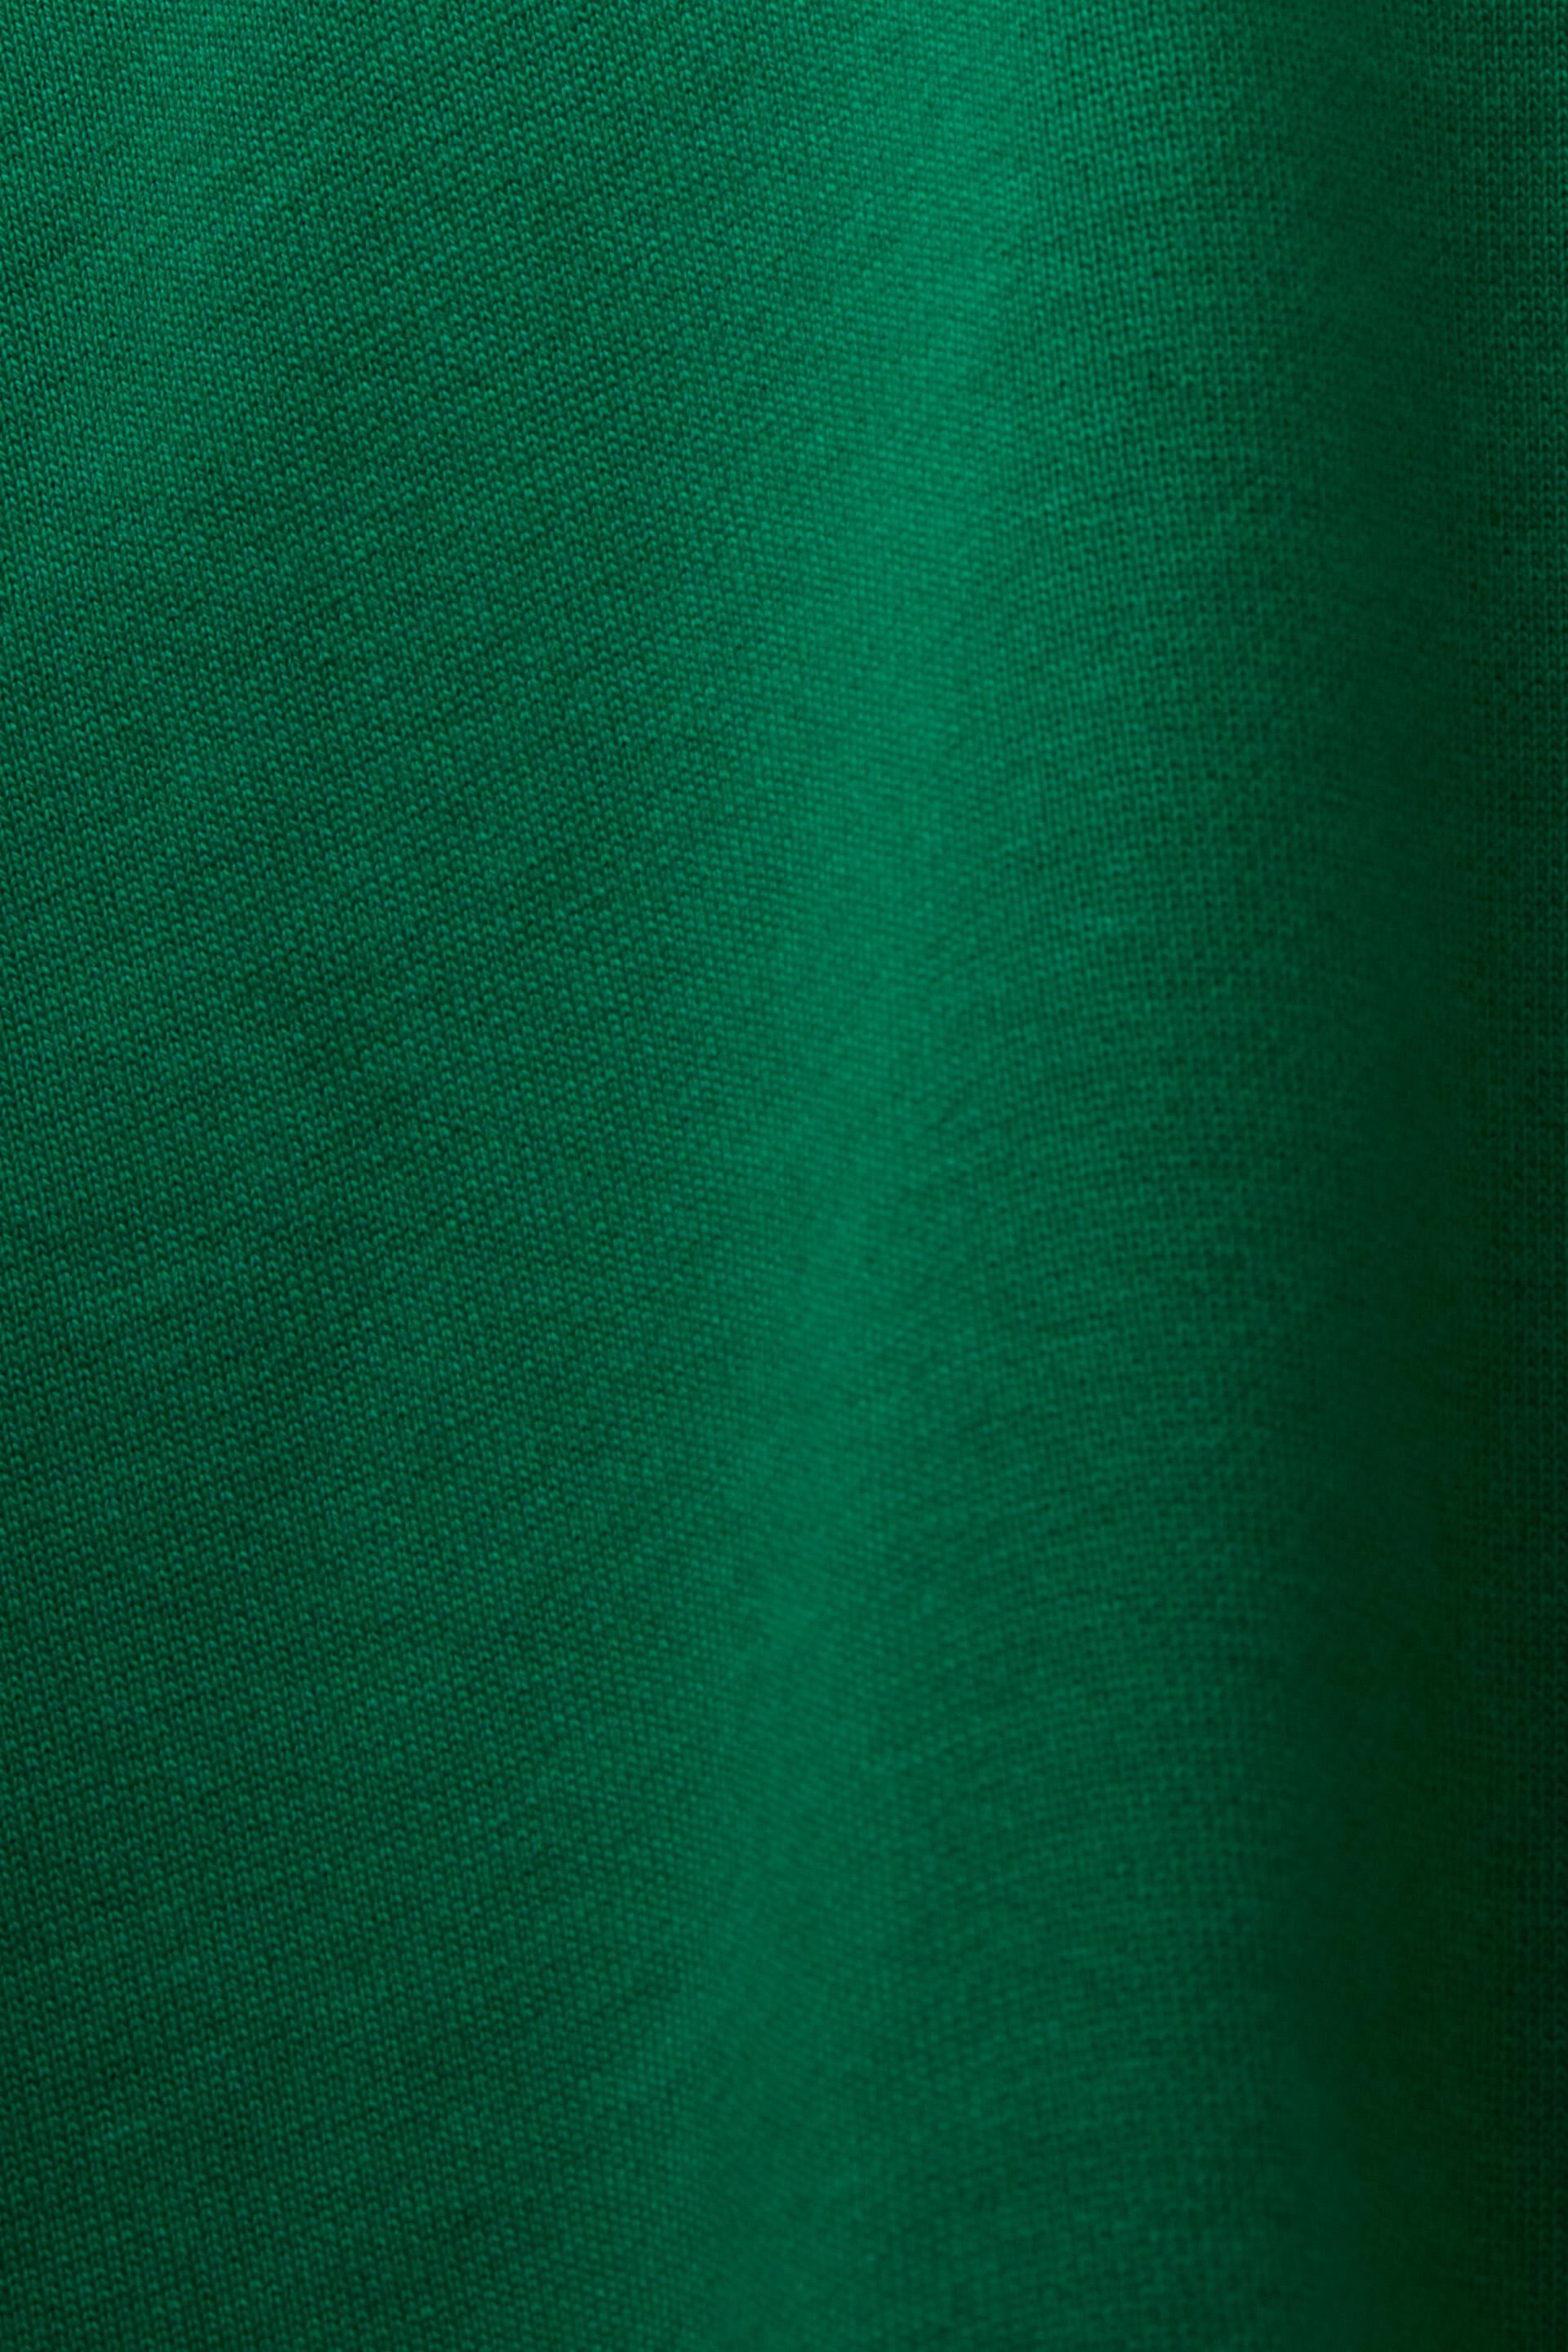 Esprit Damen Kapuzenpullover mit Bio-Baumwolle aufgesticktem Logo